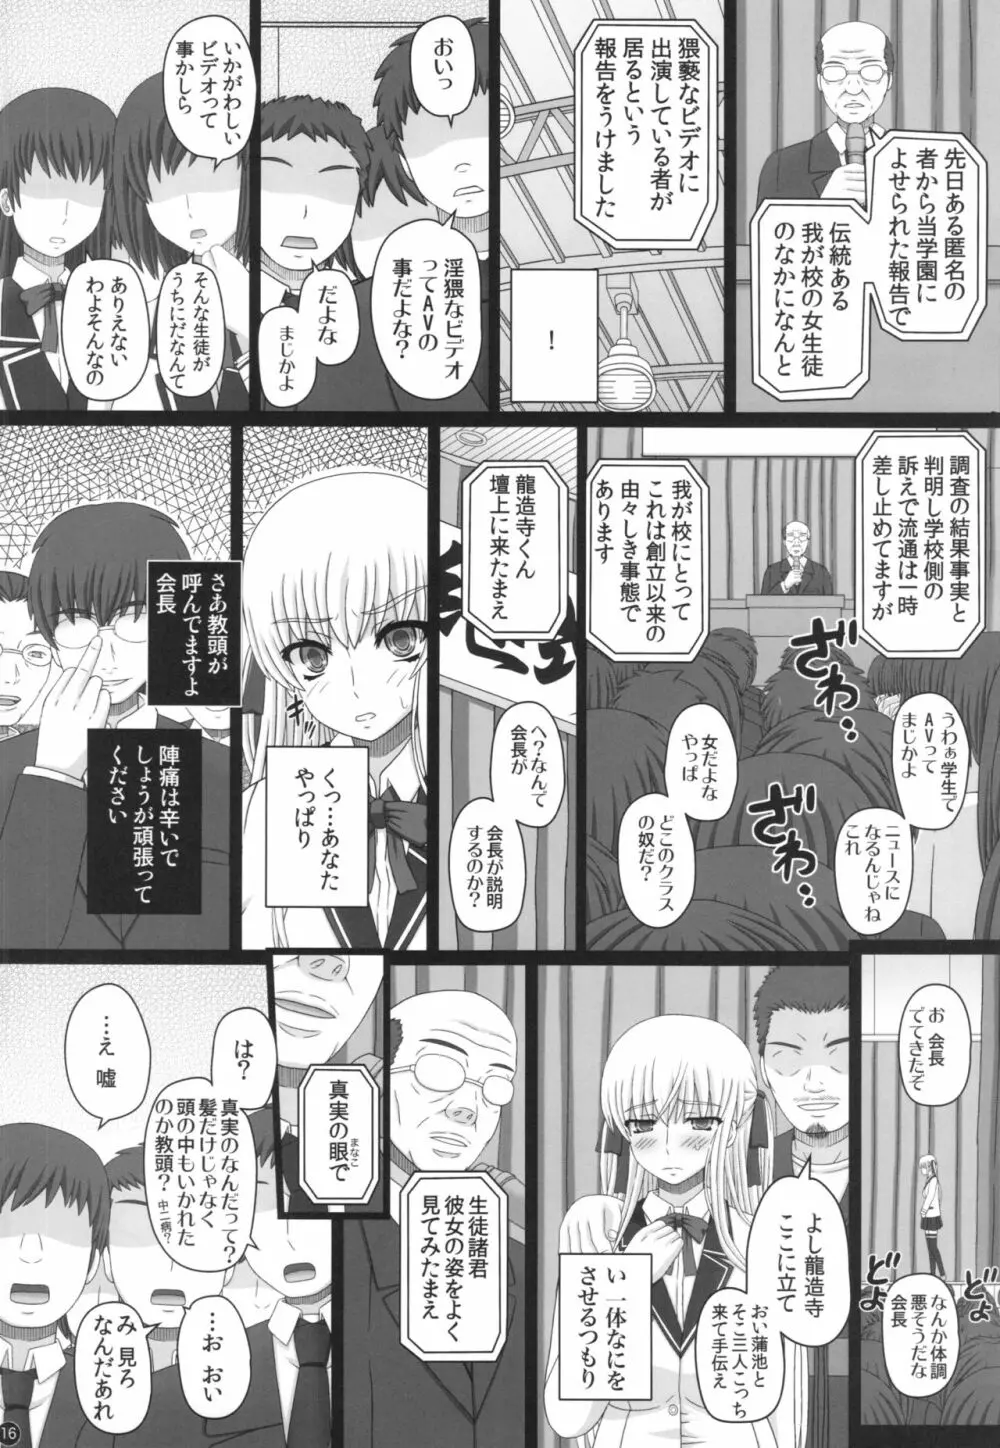 Katashibu 40-shuu 16ページ